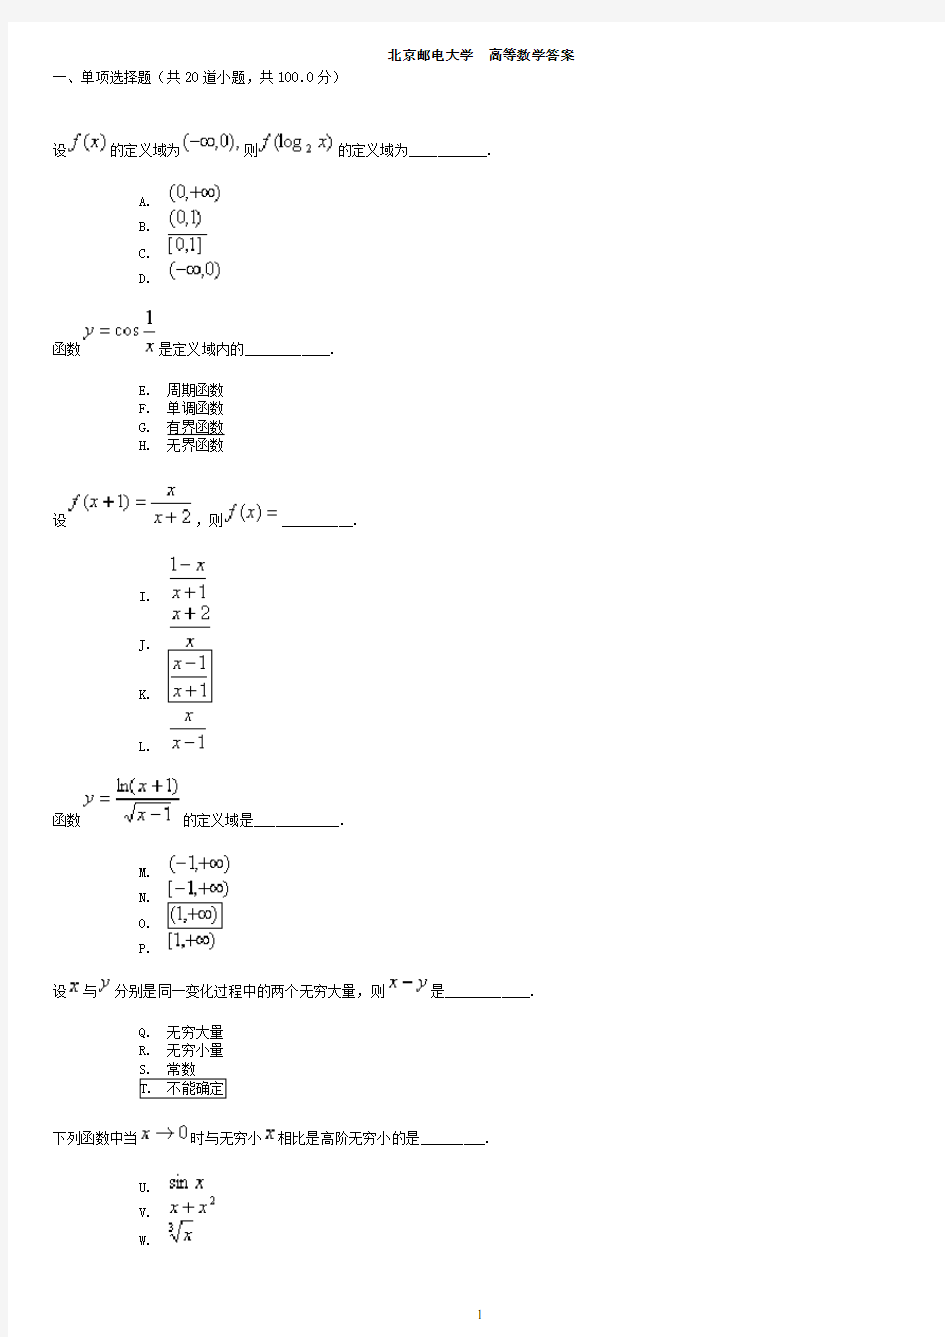 北京邮电大学 高等数学(全)答案.pdf